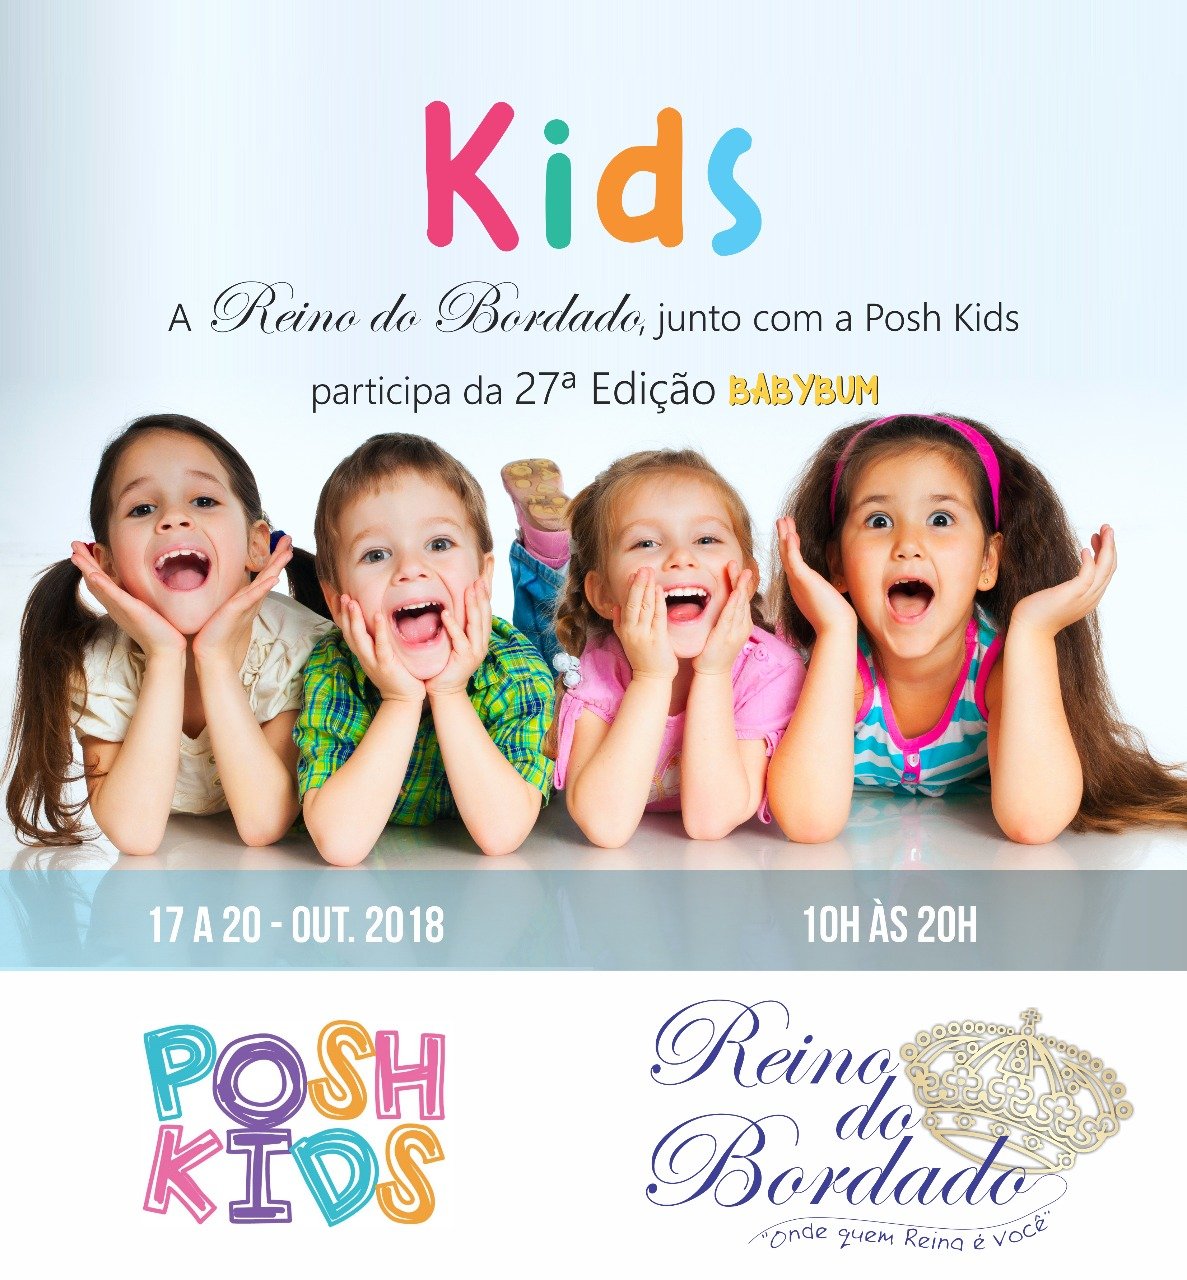 Reino do Bordado participa do evento Posh Kids